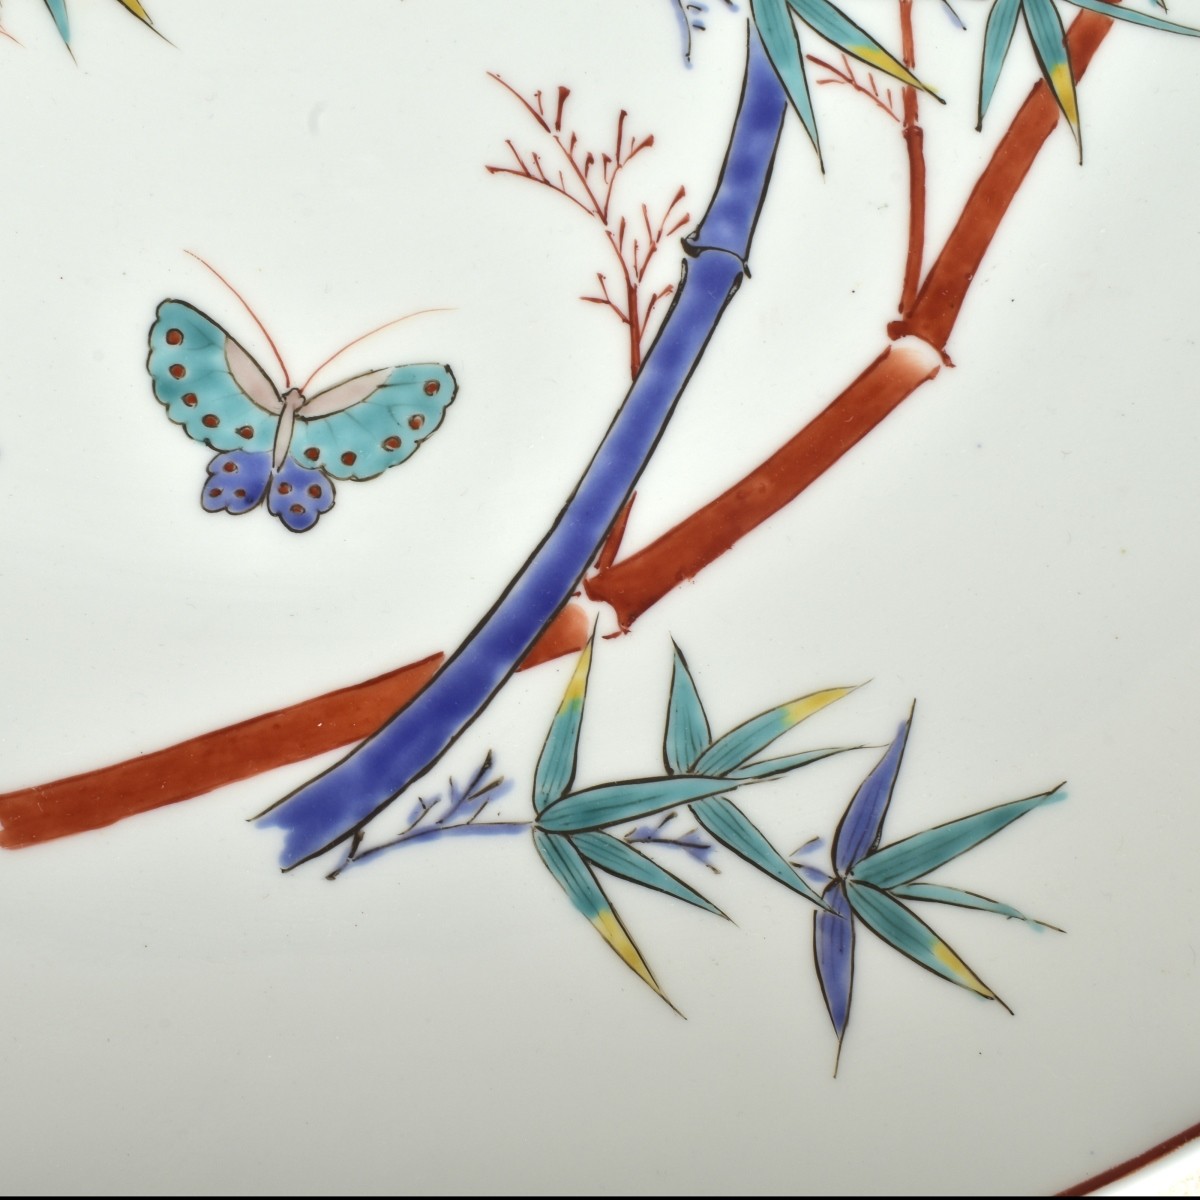 Japanese Porcelain Platter